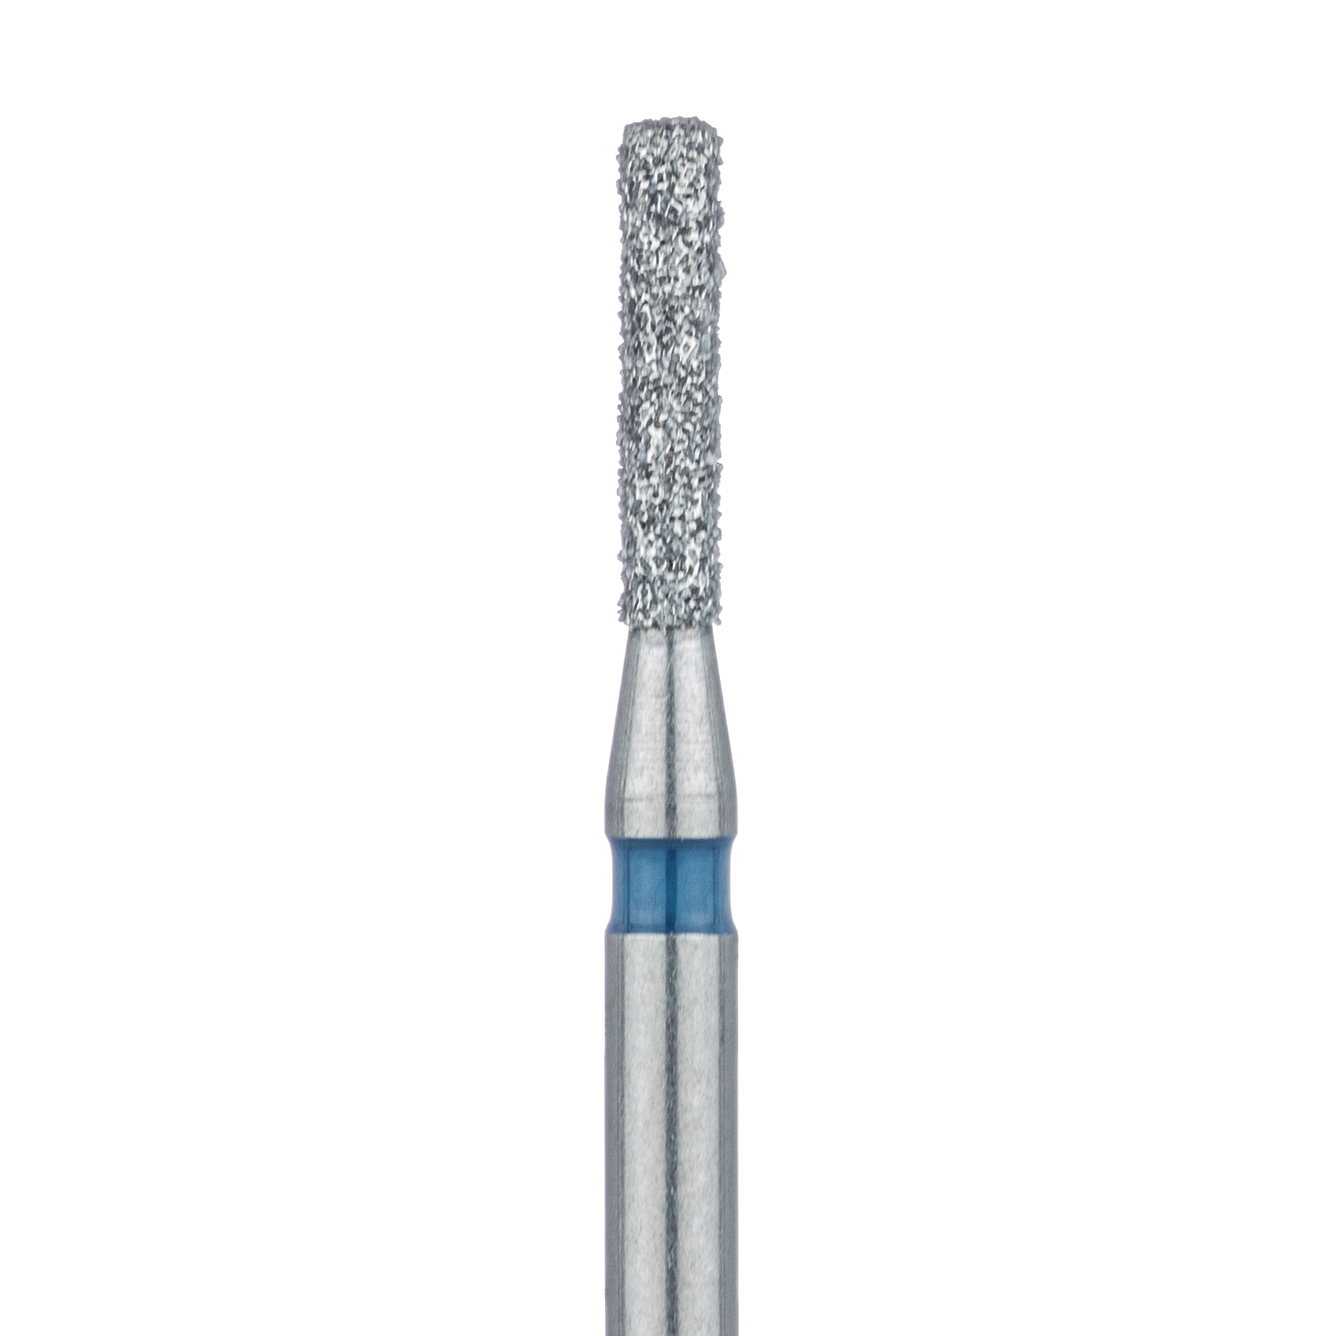 841-012-FG Round Edge Long Cylinder Diamond Bur, 1.2mm Ø, Medium, FG 